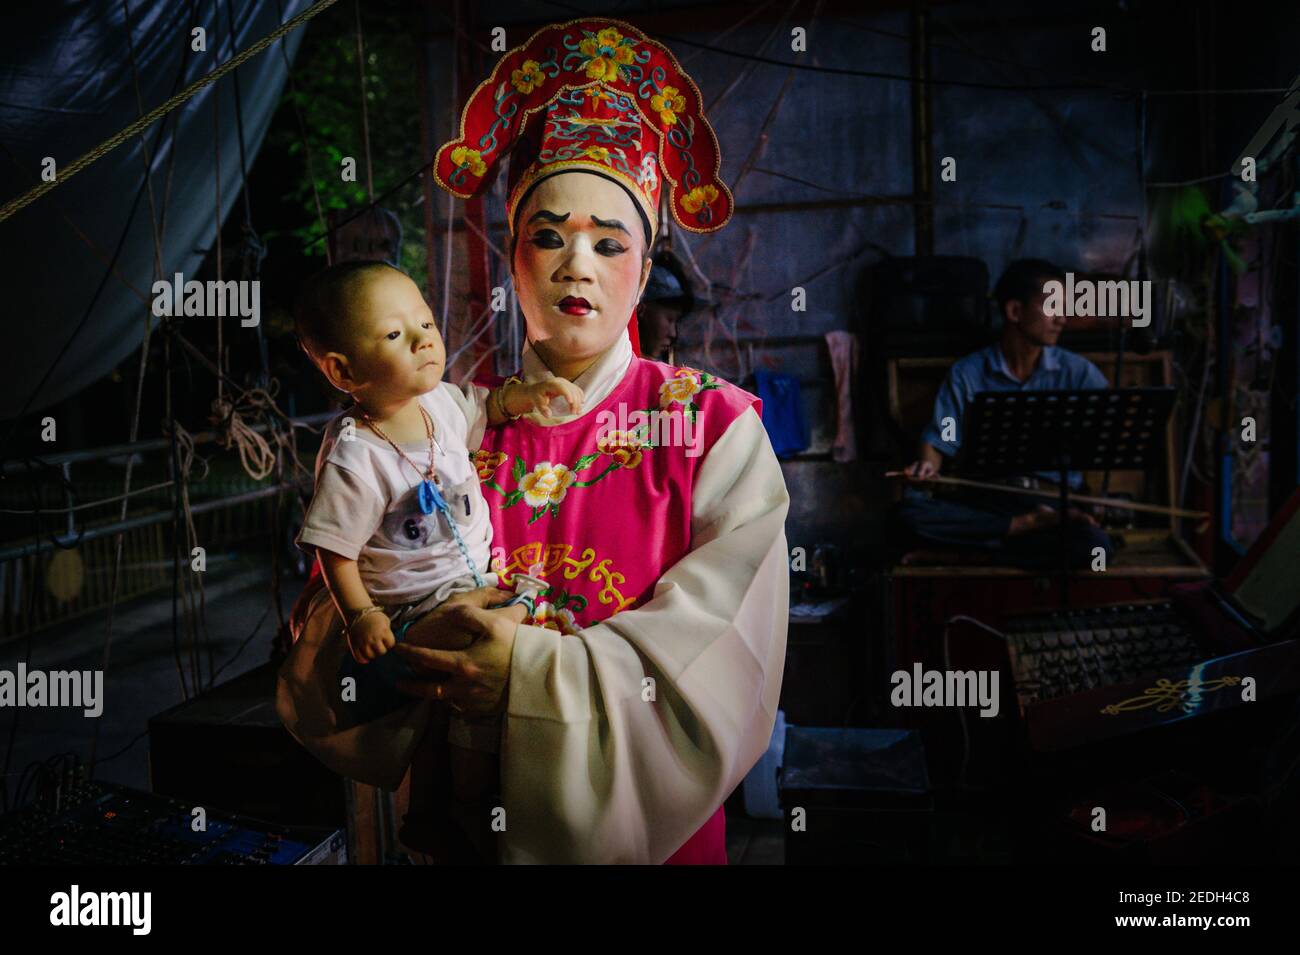 Un jugador de ópera chino completamente vestido con su colorido traje, sostiene a su bebé mientras espera entre bastidores para ponerse en el escenario. Foto de stock